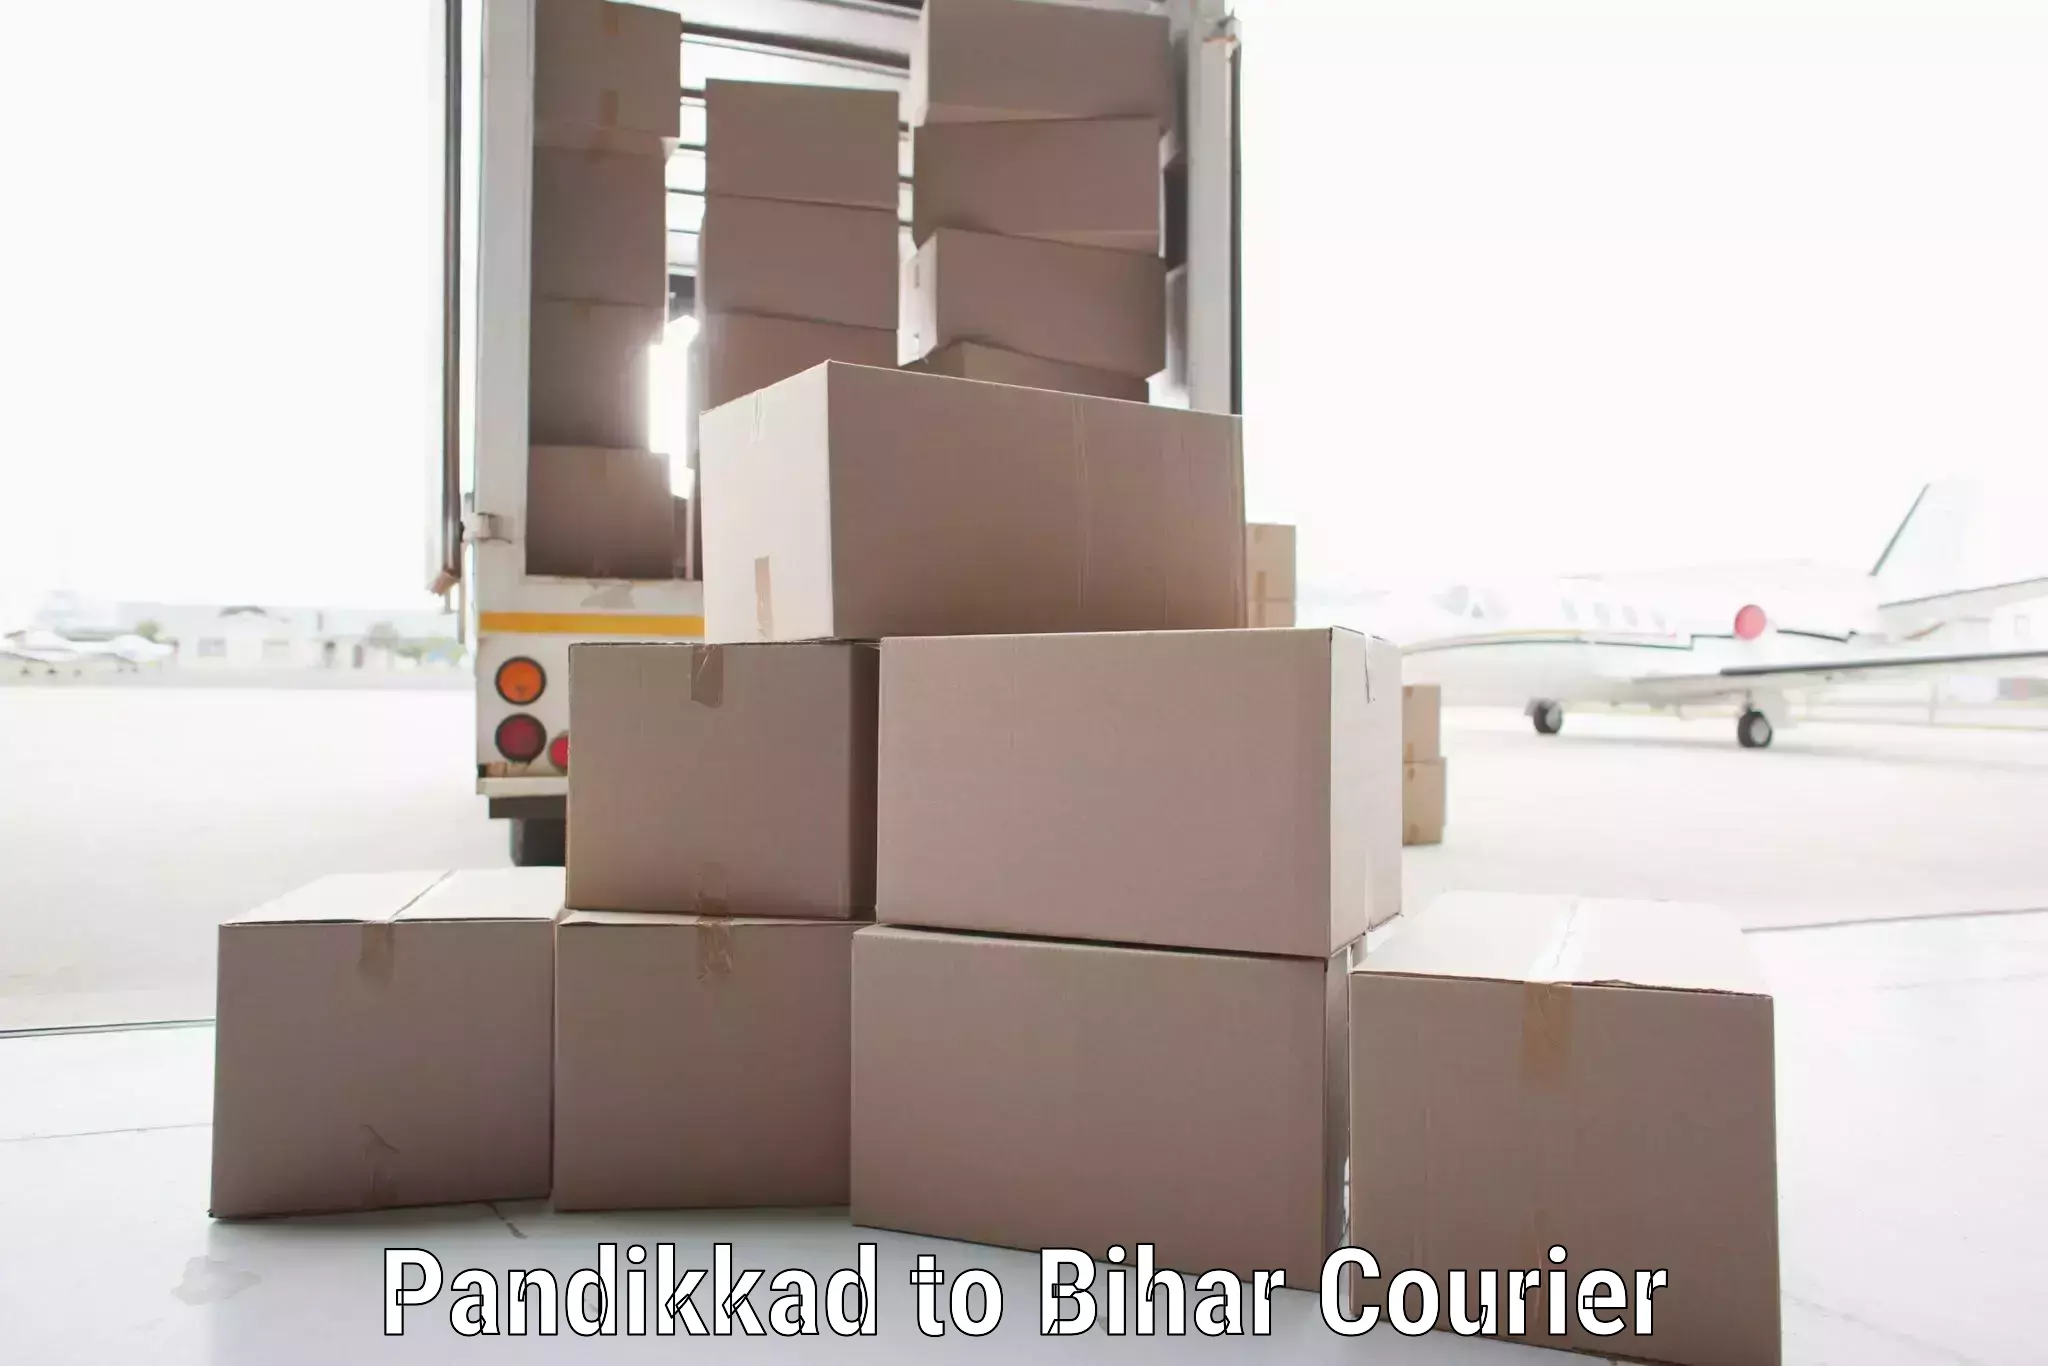 Comprehensive parcel tracking Pandikkad to Bihar